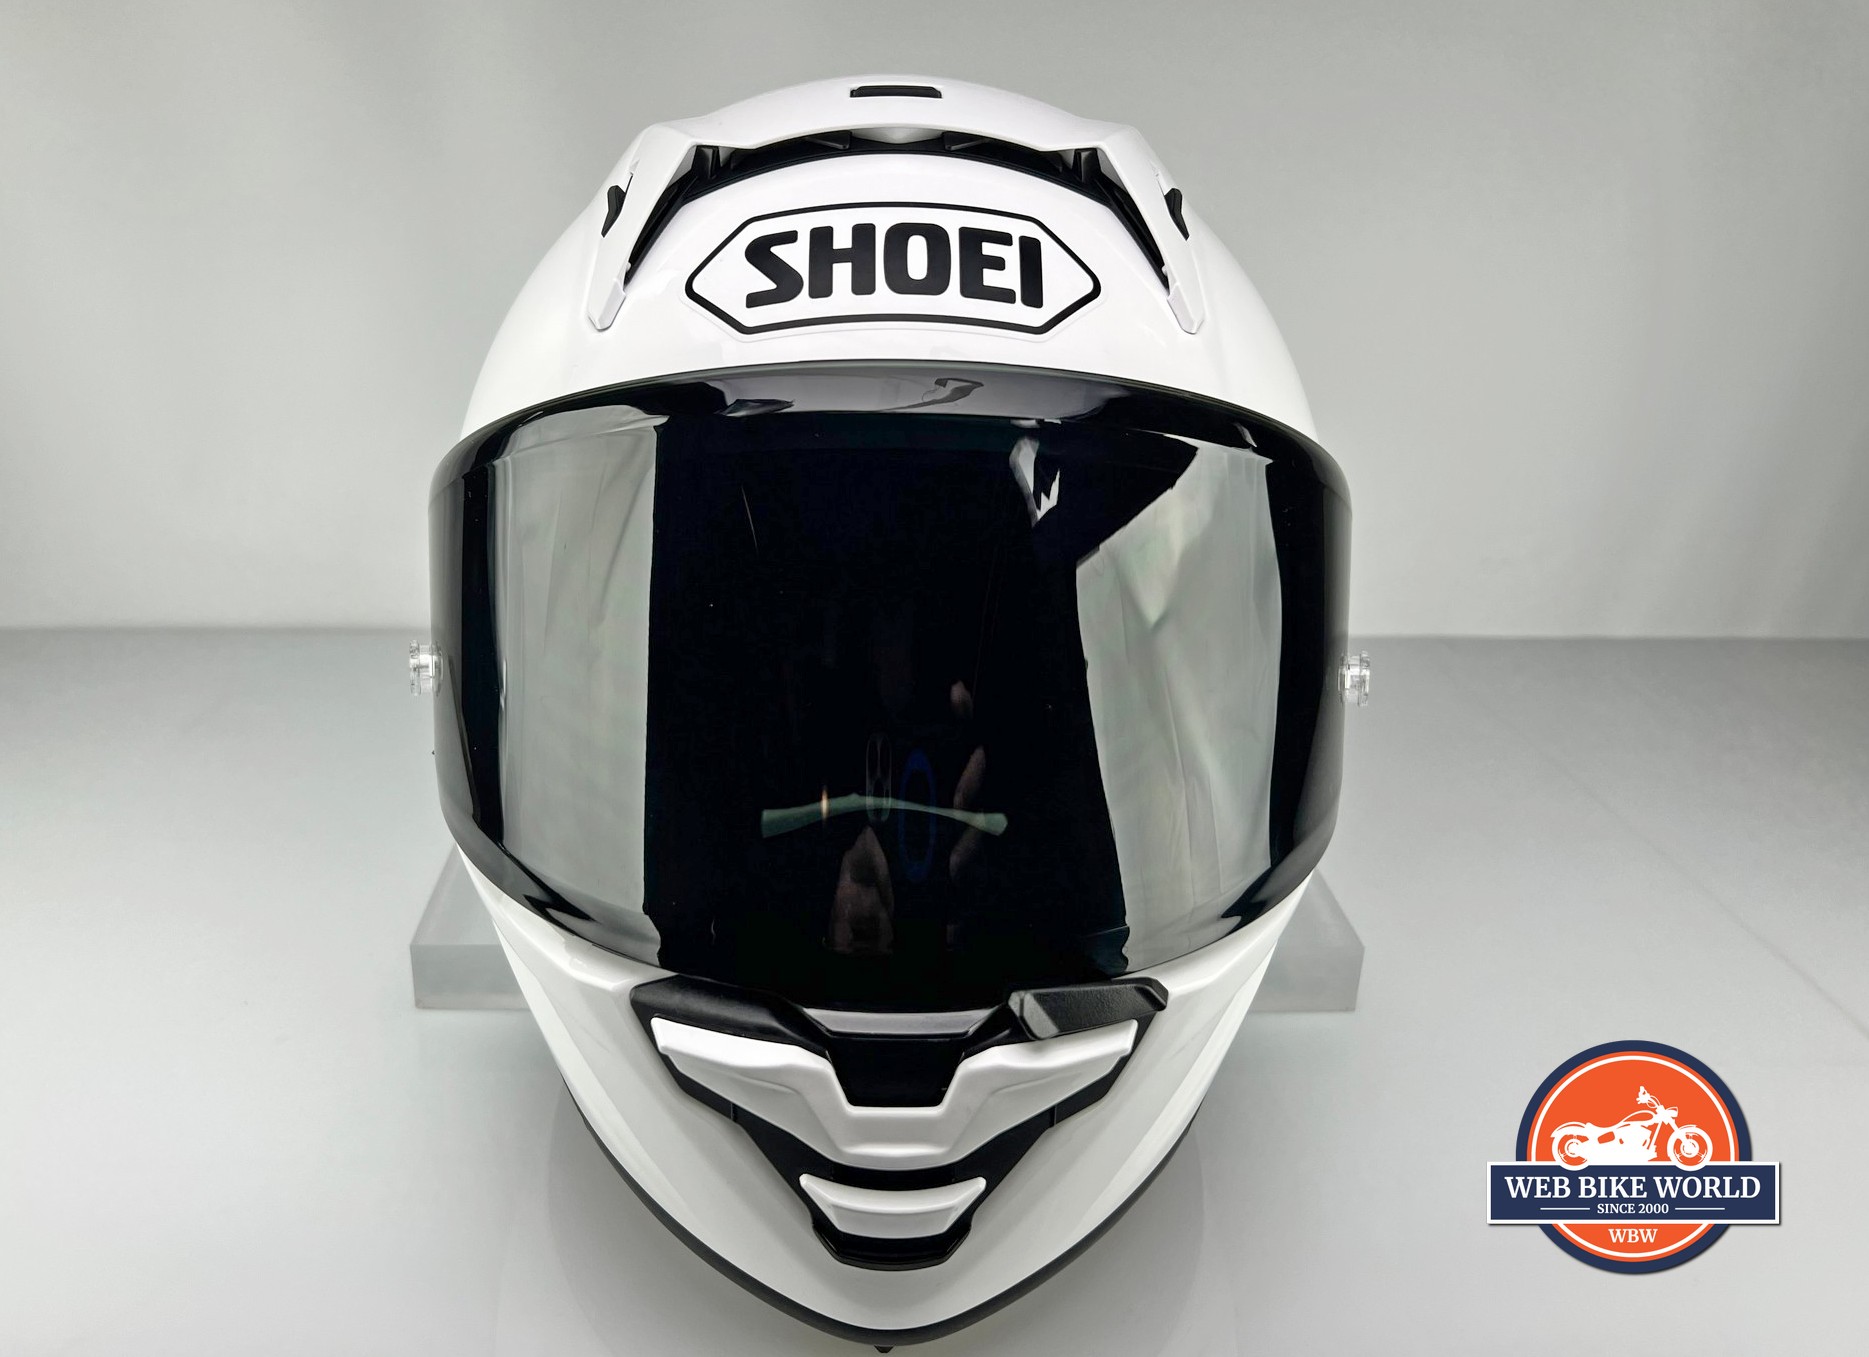 Tinted visor installed on the Shoei X-15 helmet